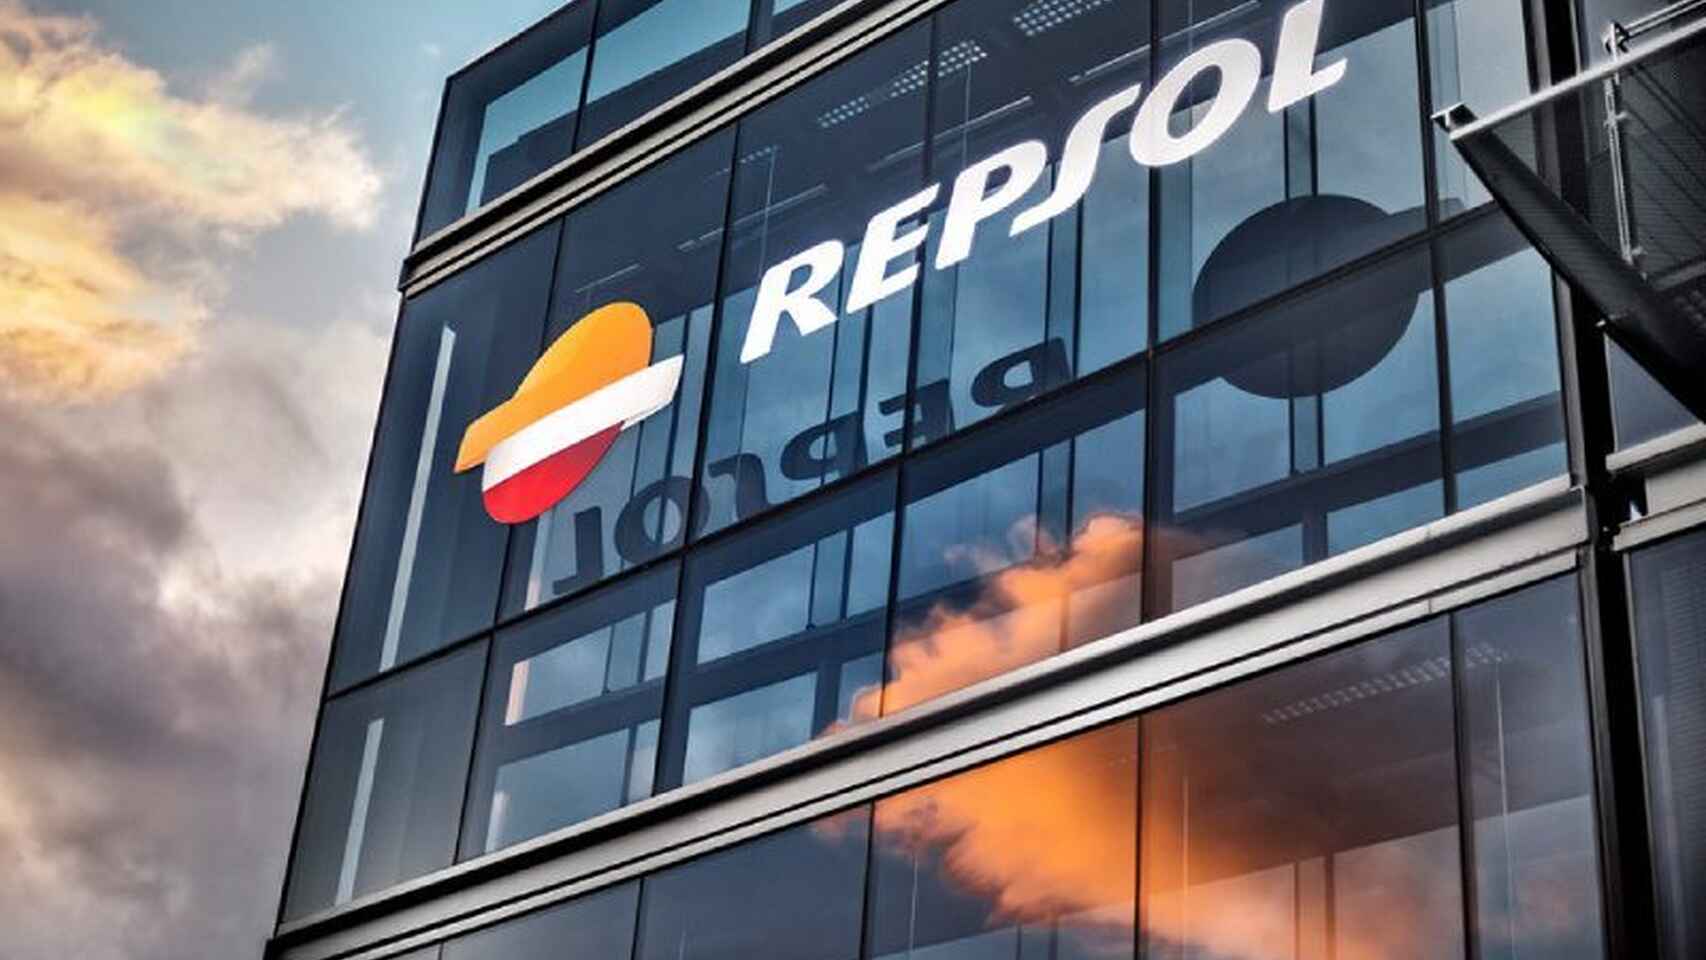 Repsol refuerza su negocio energético con esta adquisición